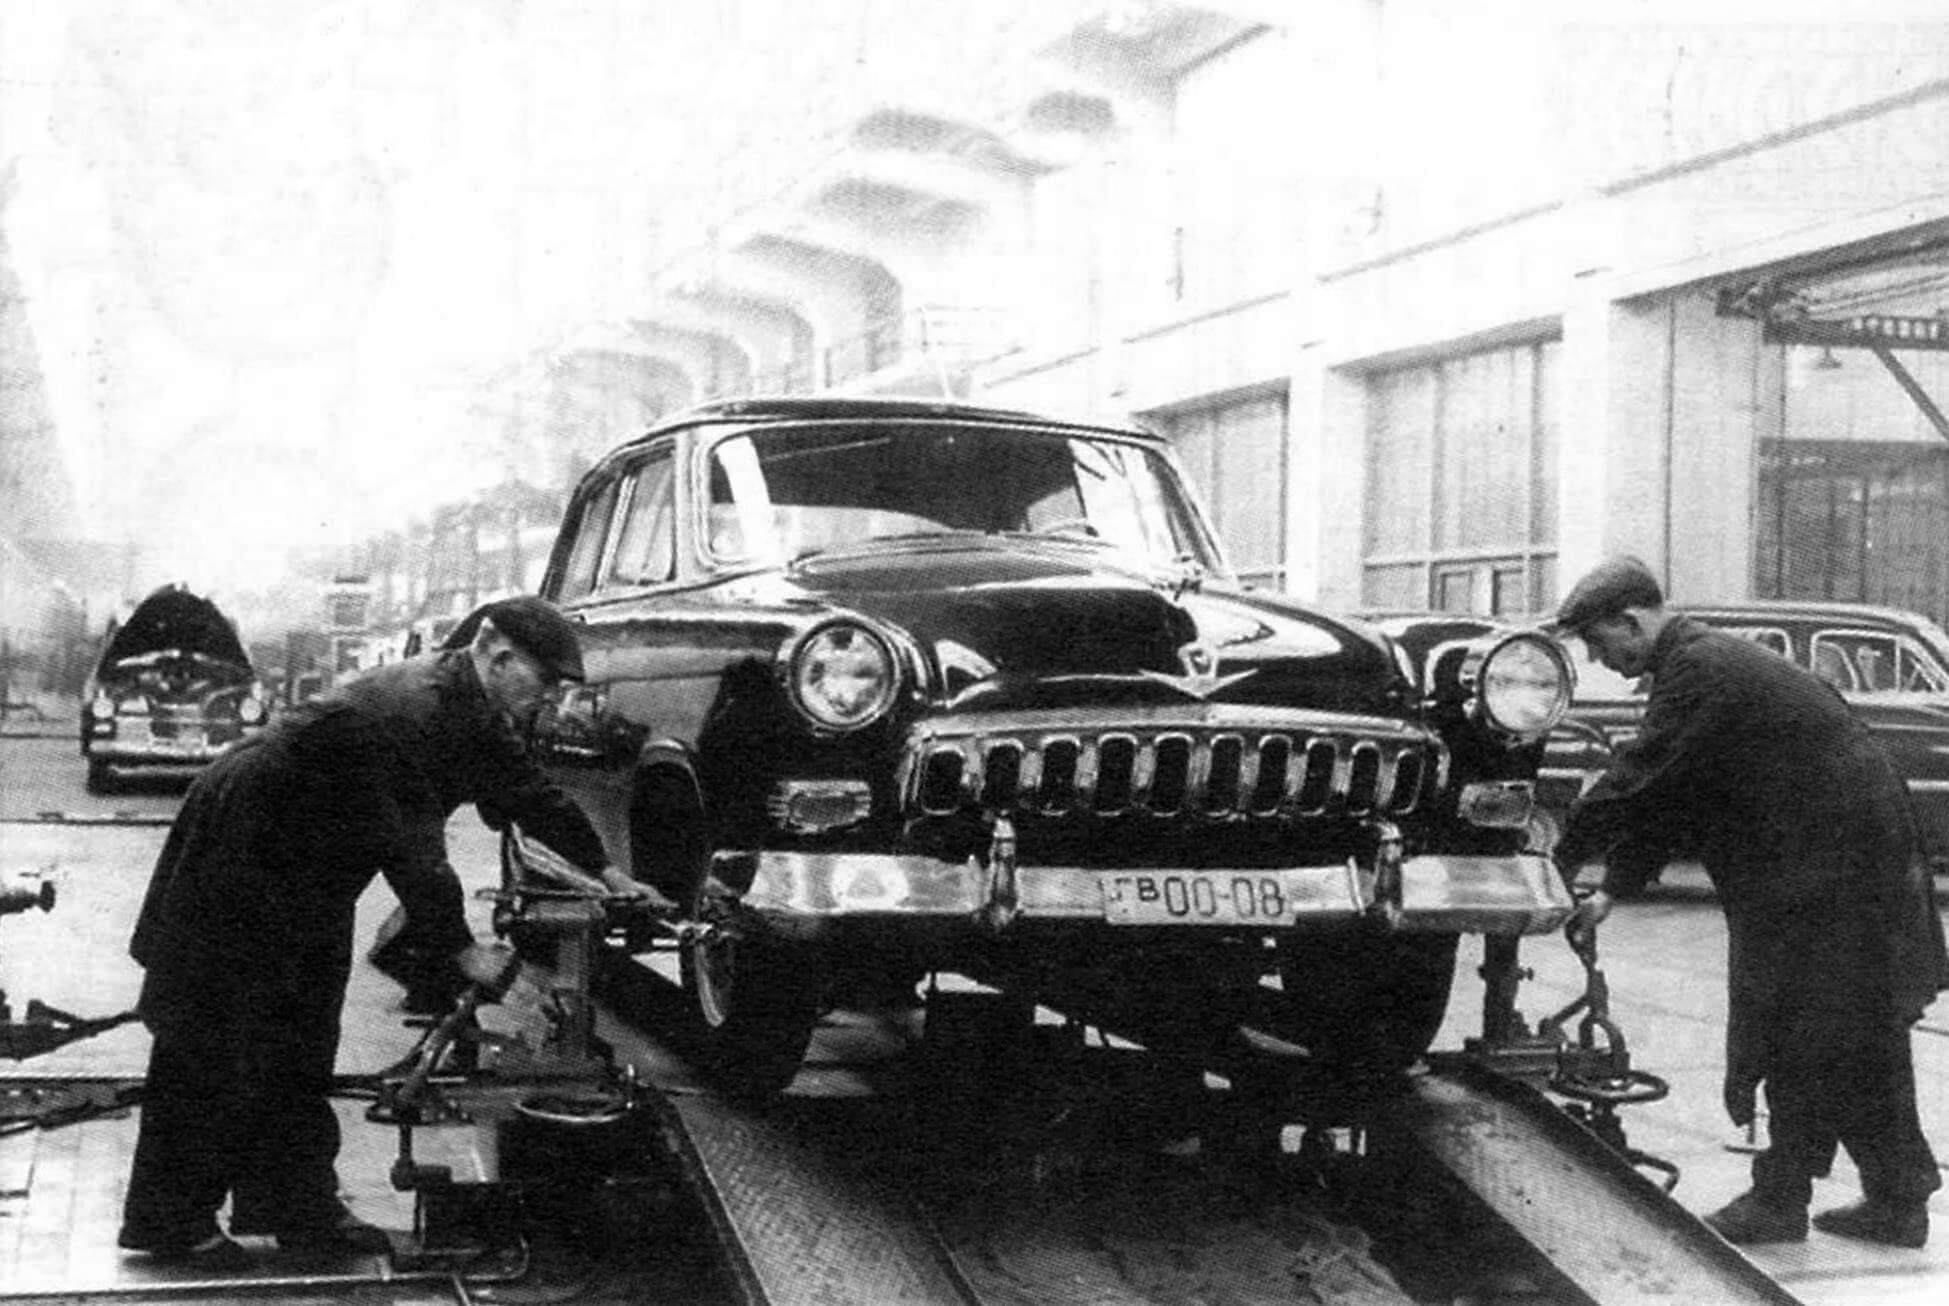 Сборка на Горьковском автозаводе опытного образца автомобиля М-21 "Волга". Март 1953 г.